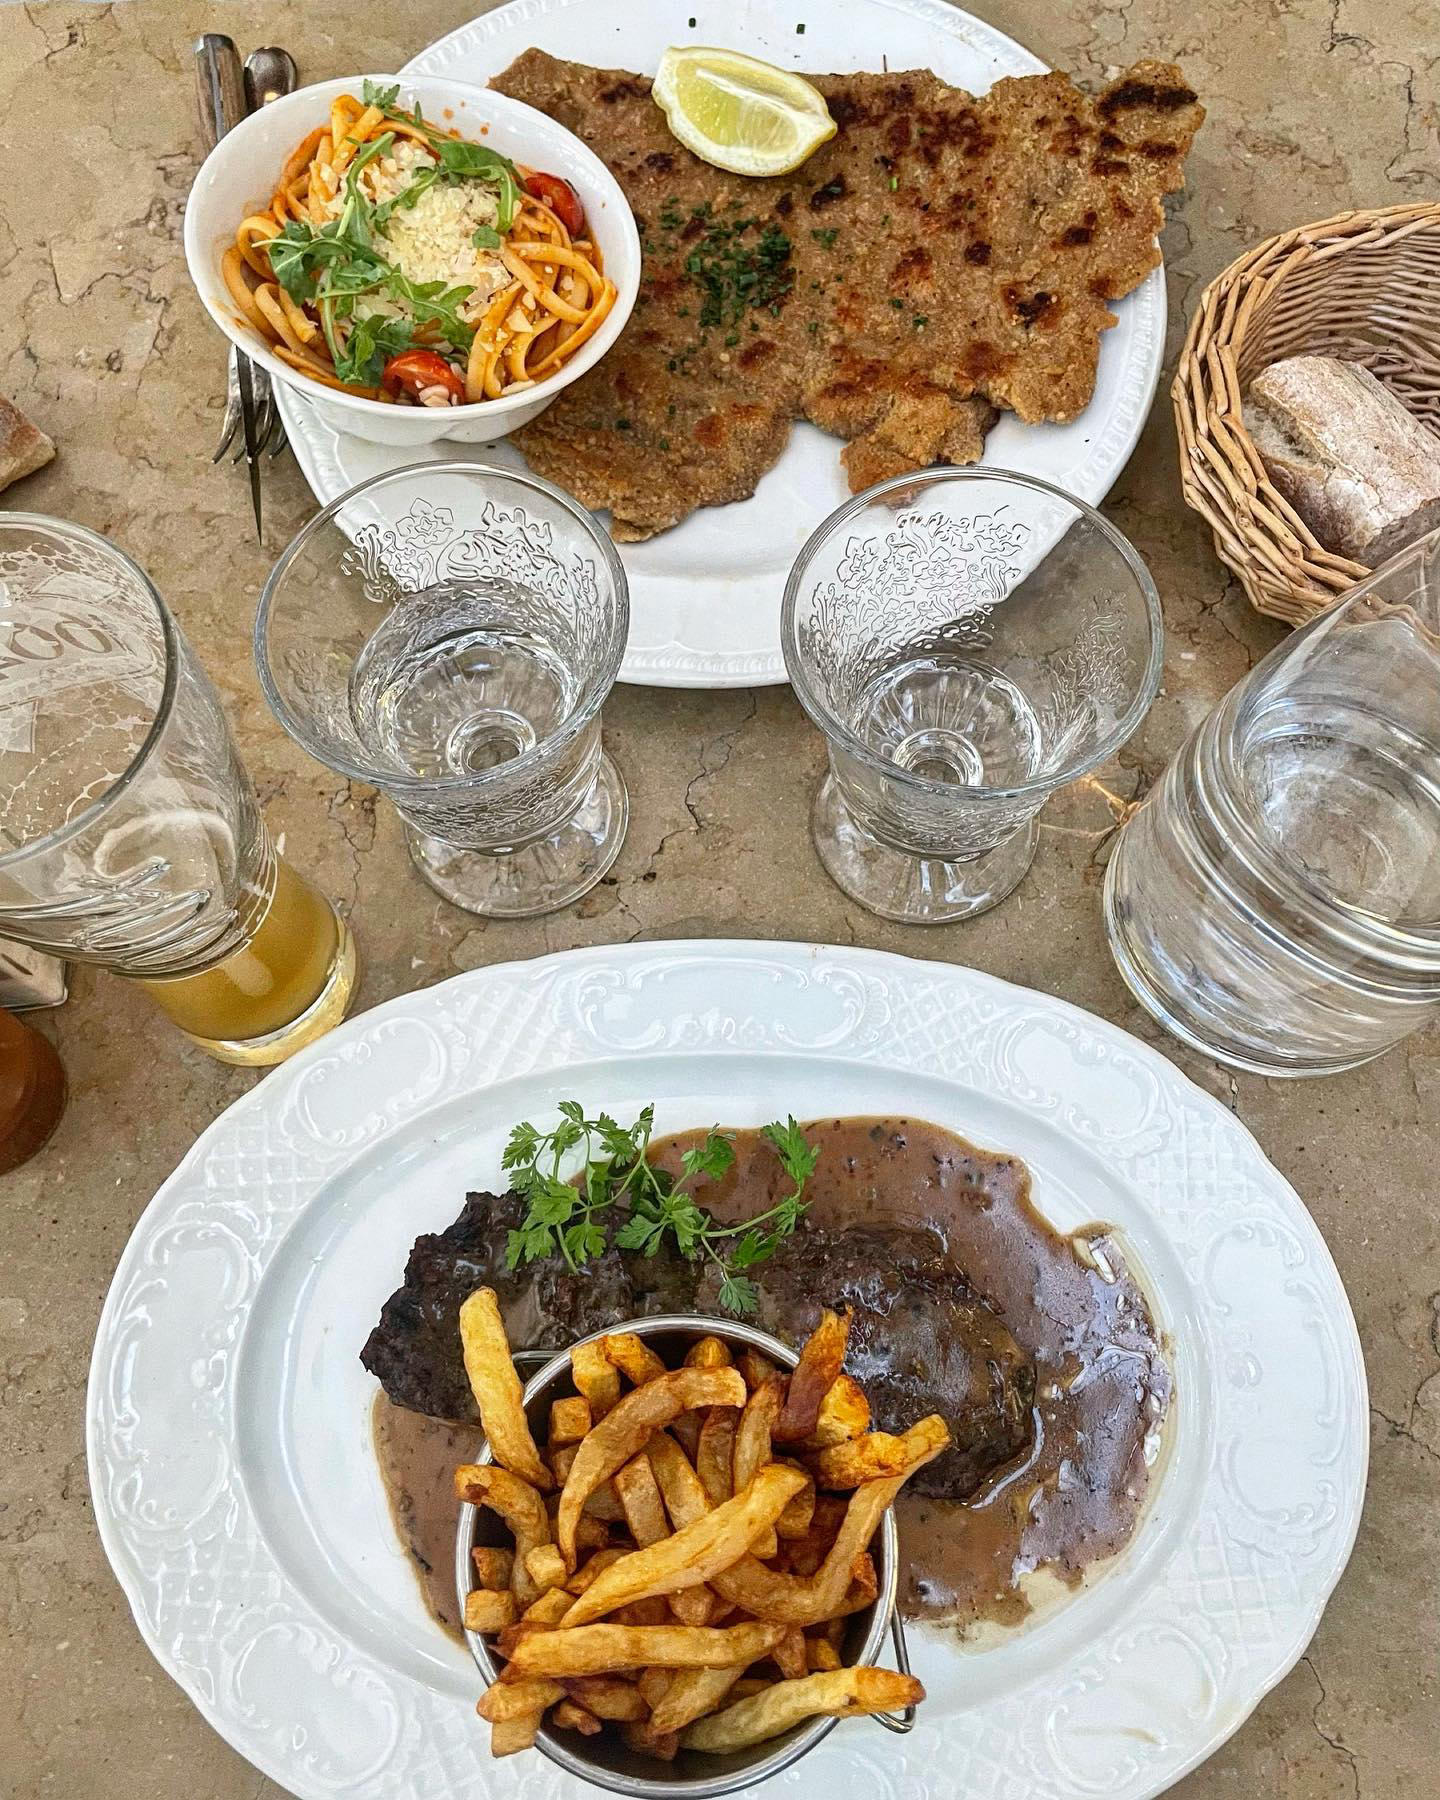 Paris Food Guide - Superbe adresse pour bien manger et dans un cadre magnifique